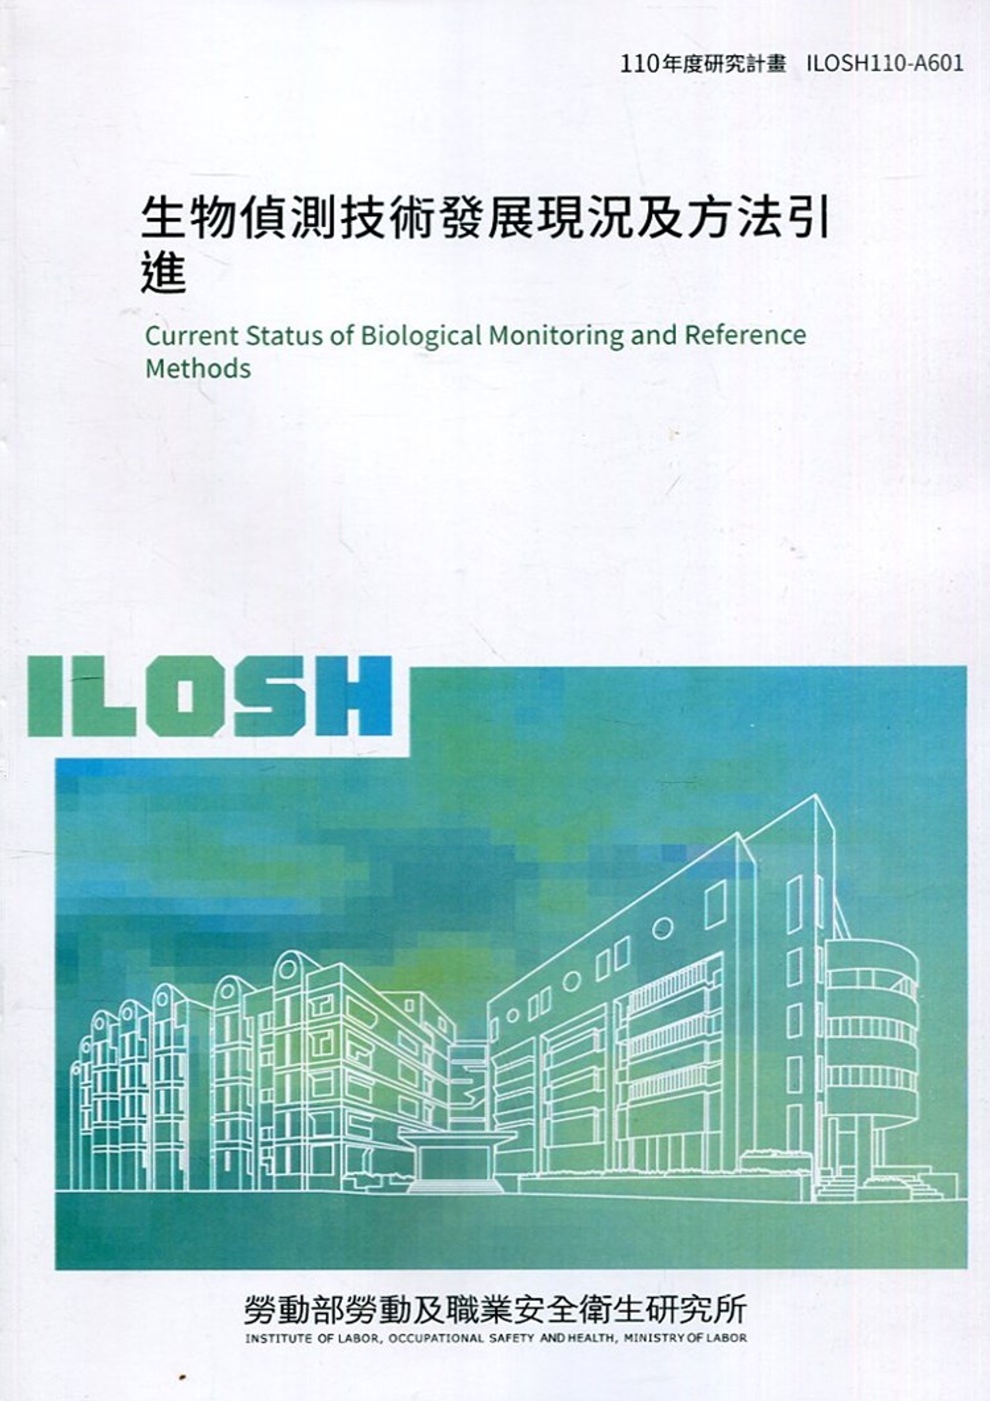 生物偵測技術發展現況及方法引進 ILOSH110-A601